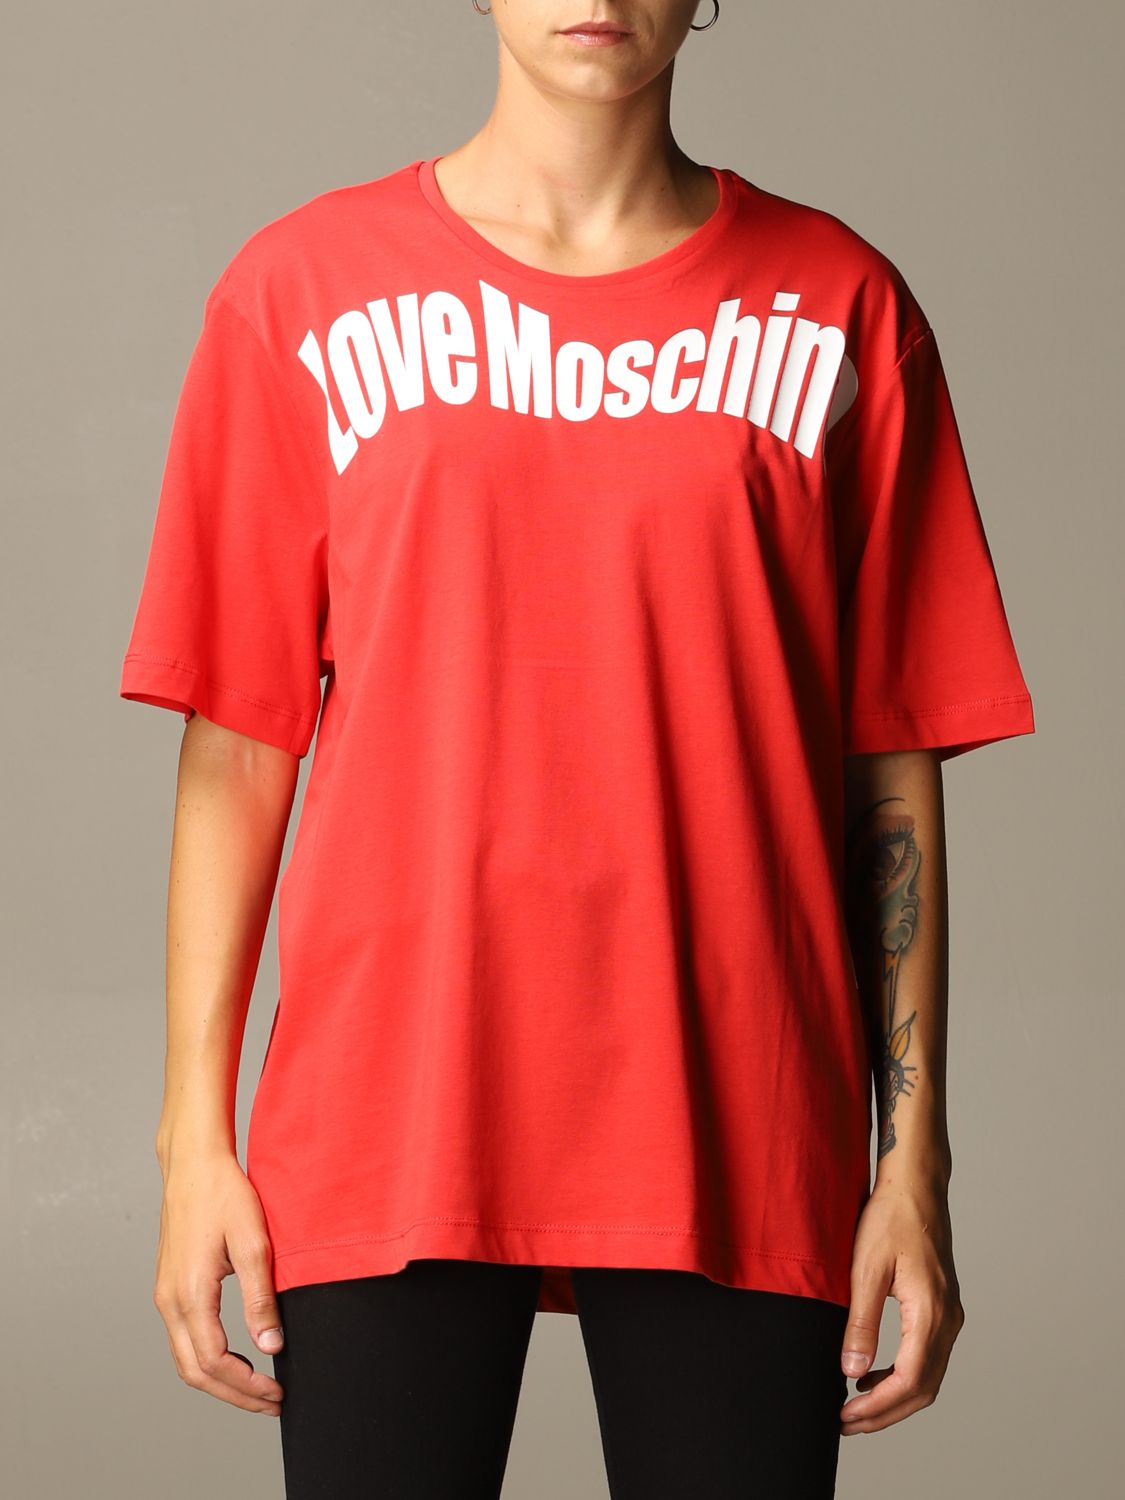 red moschino t shirt